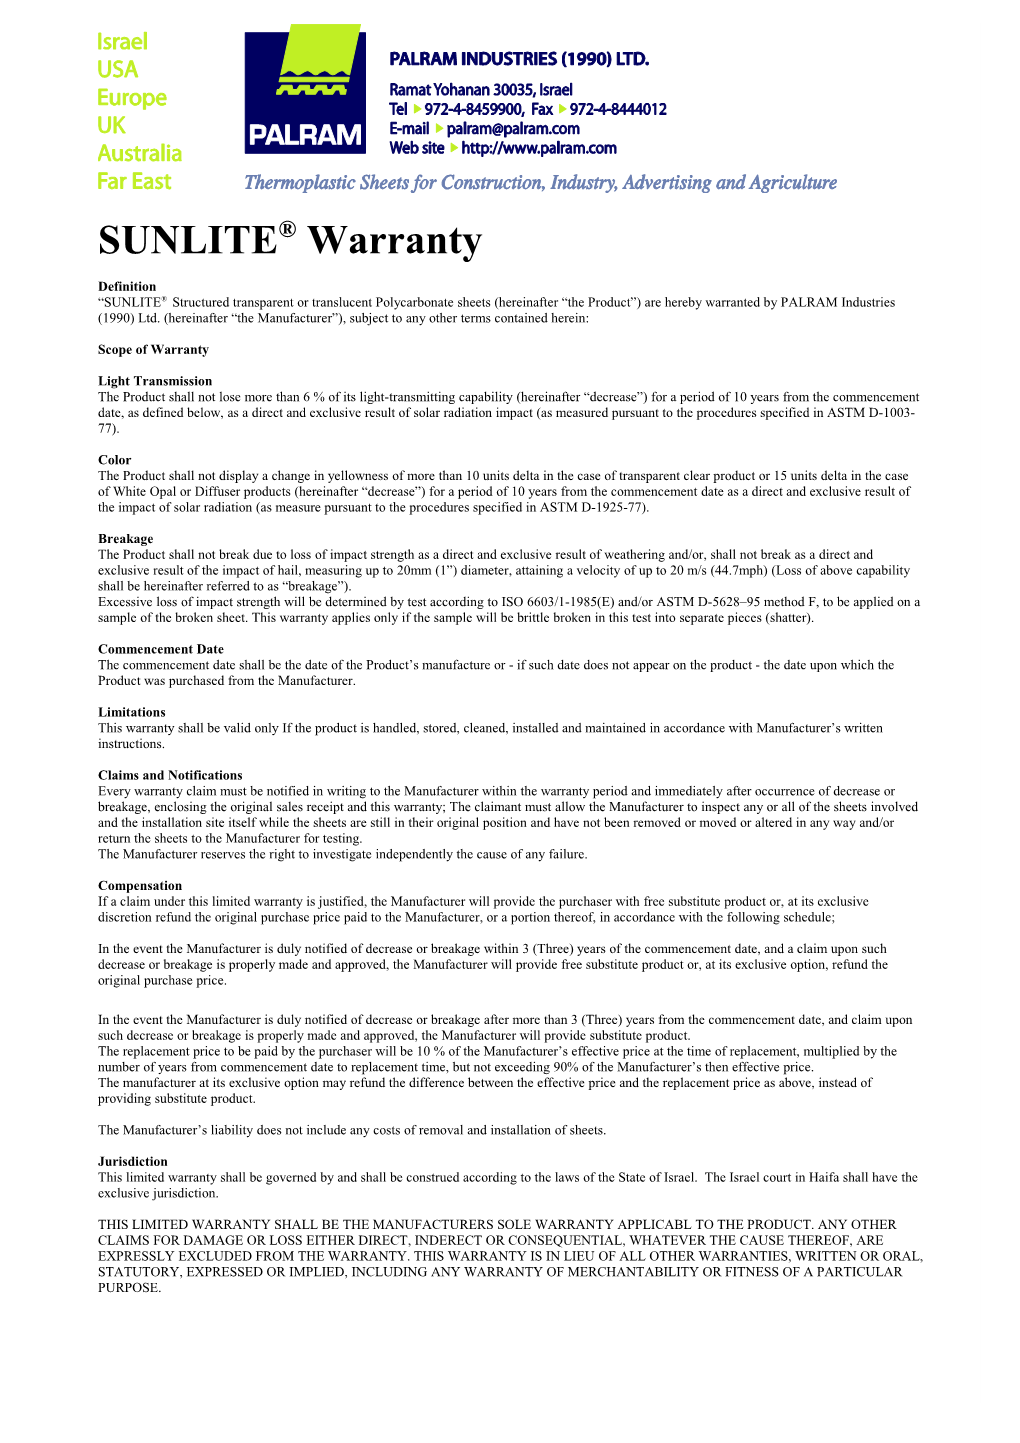 SUNLITE Warranty